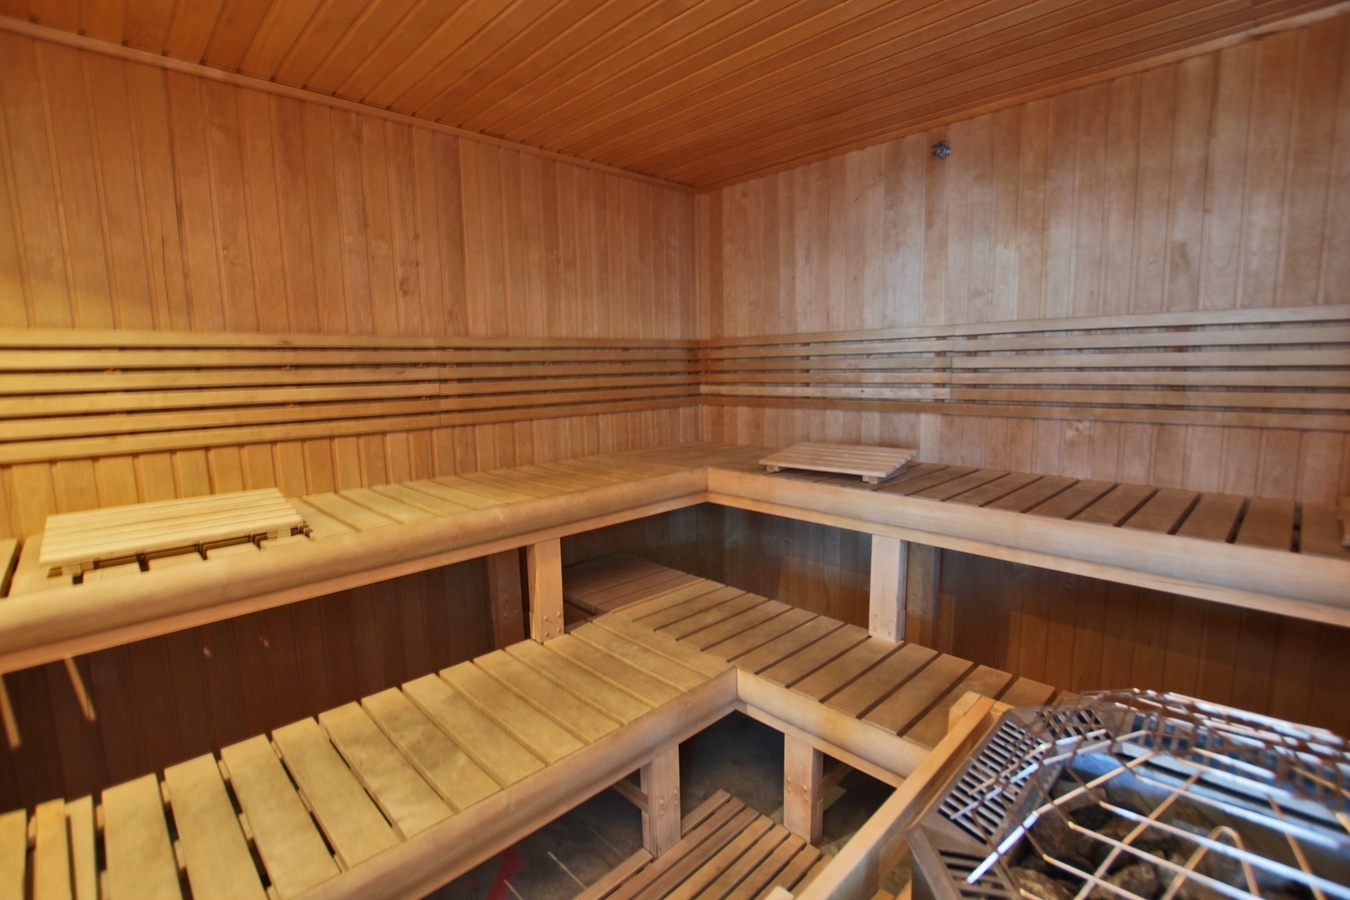 Sauna 5018 St Laurent reviews, photos - CLOSED - Plateau